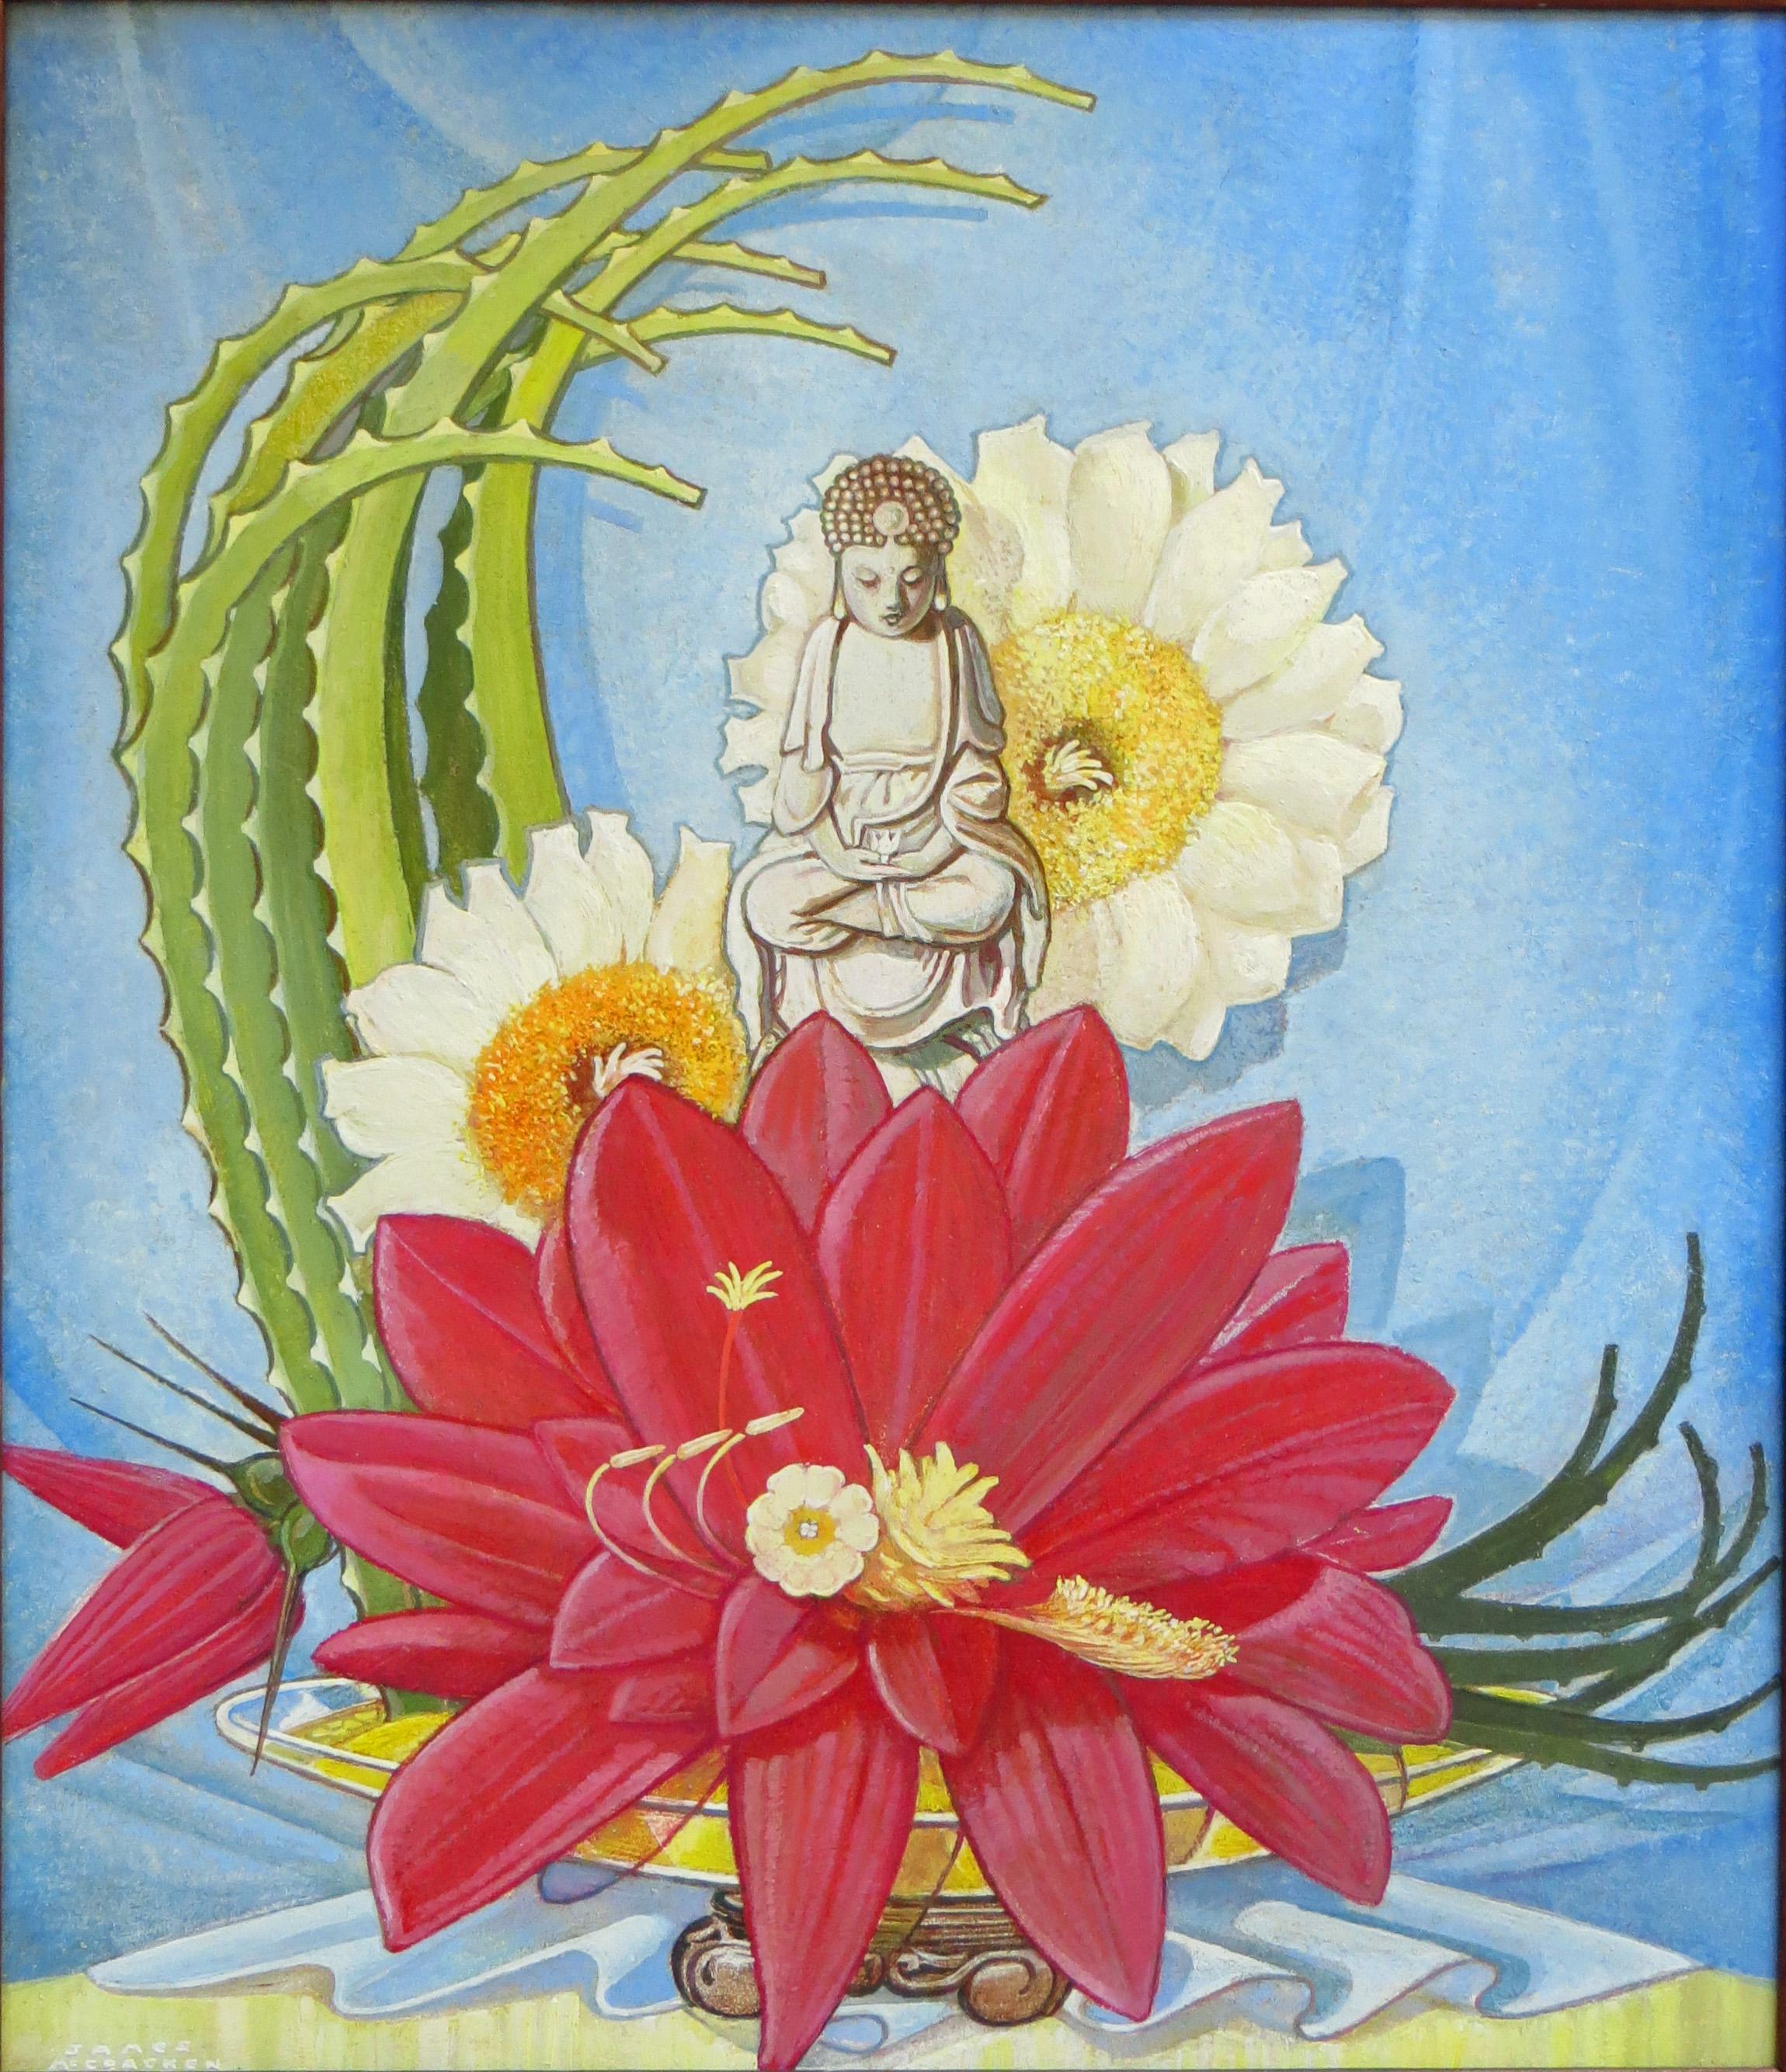 Cette huile sur panneau est une œuvre de James McCracken (1875-1967). Il s'agit d'une composition luxuriante et exotique, représentant une statue de Bouddha au sommet d'une fleur de lotus. Il y a d'autres fleurs à l'arrière-plan ainsi qu'une sorte